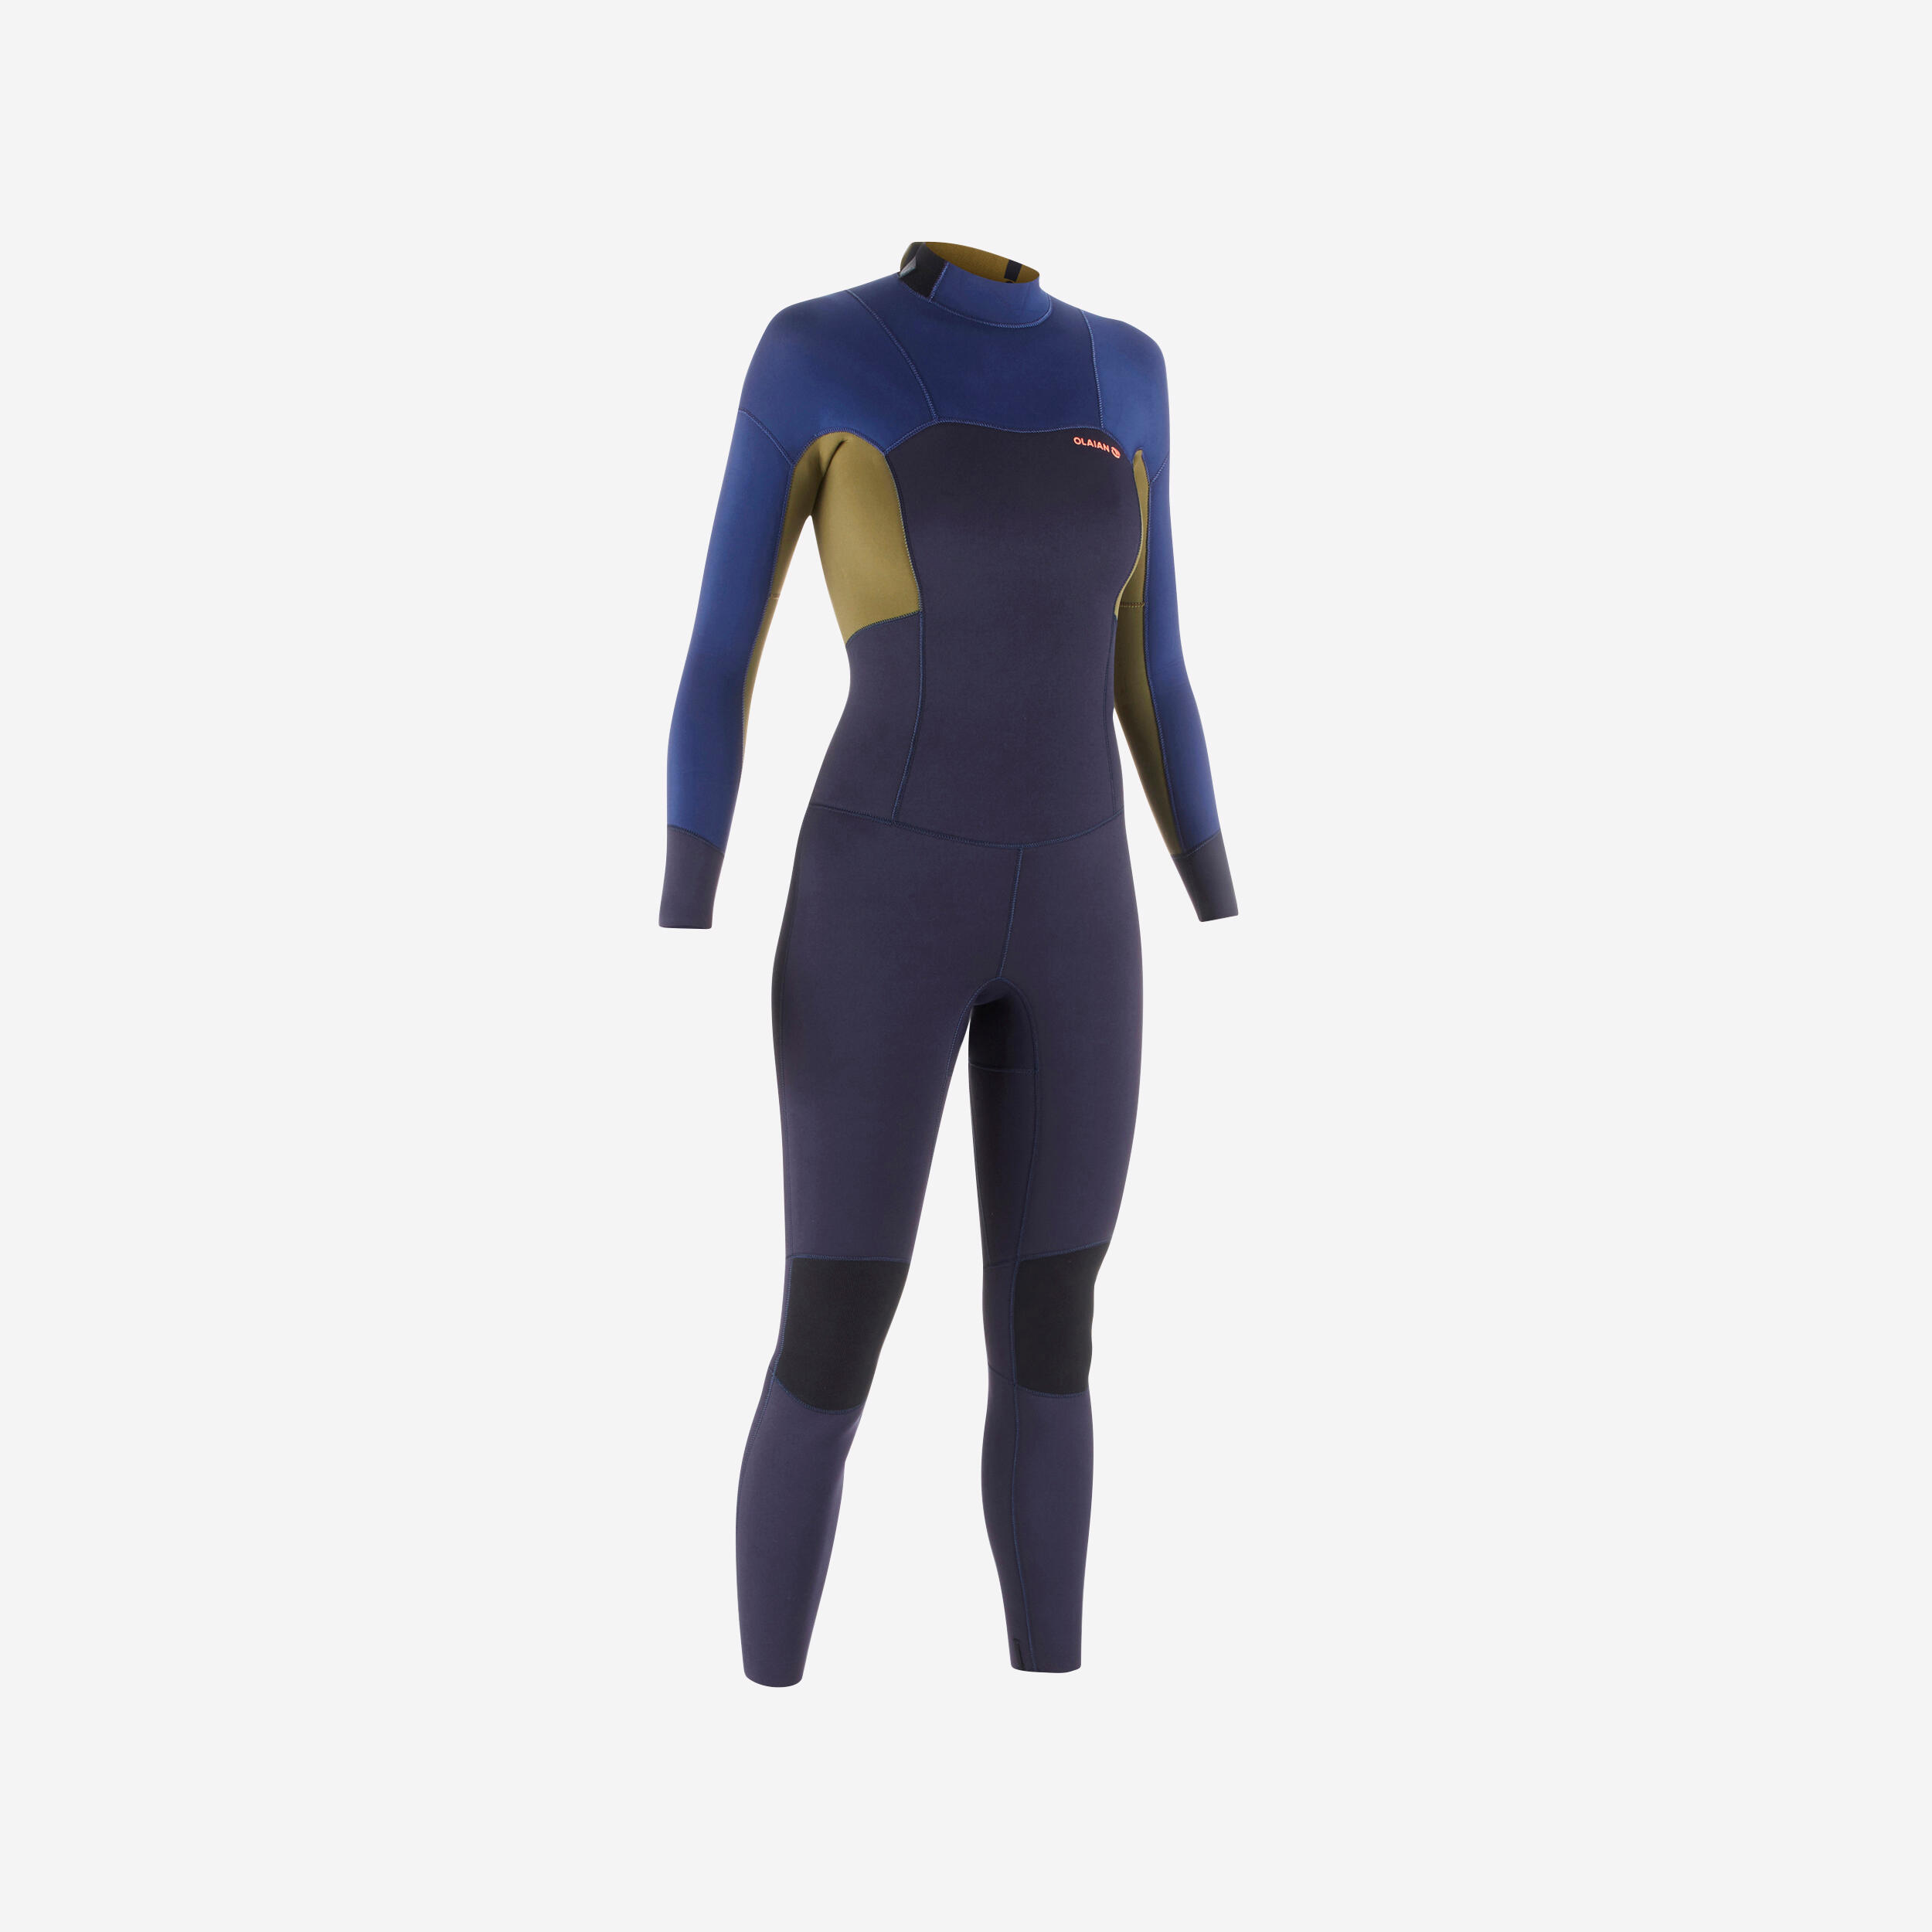 Women’s full wetsuit 3/2,500 back zip 1/1